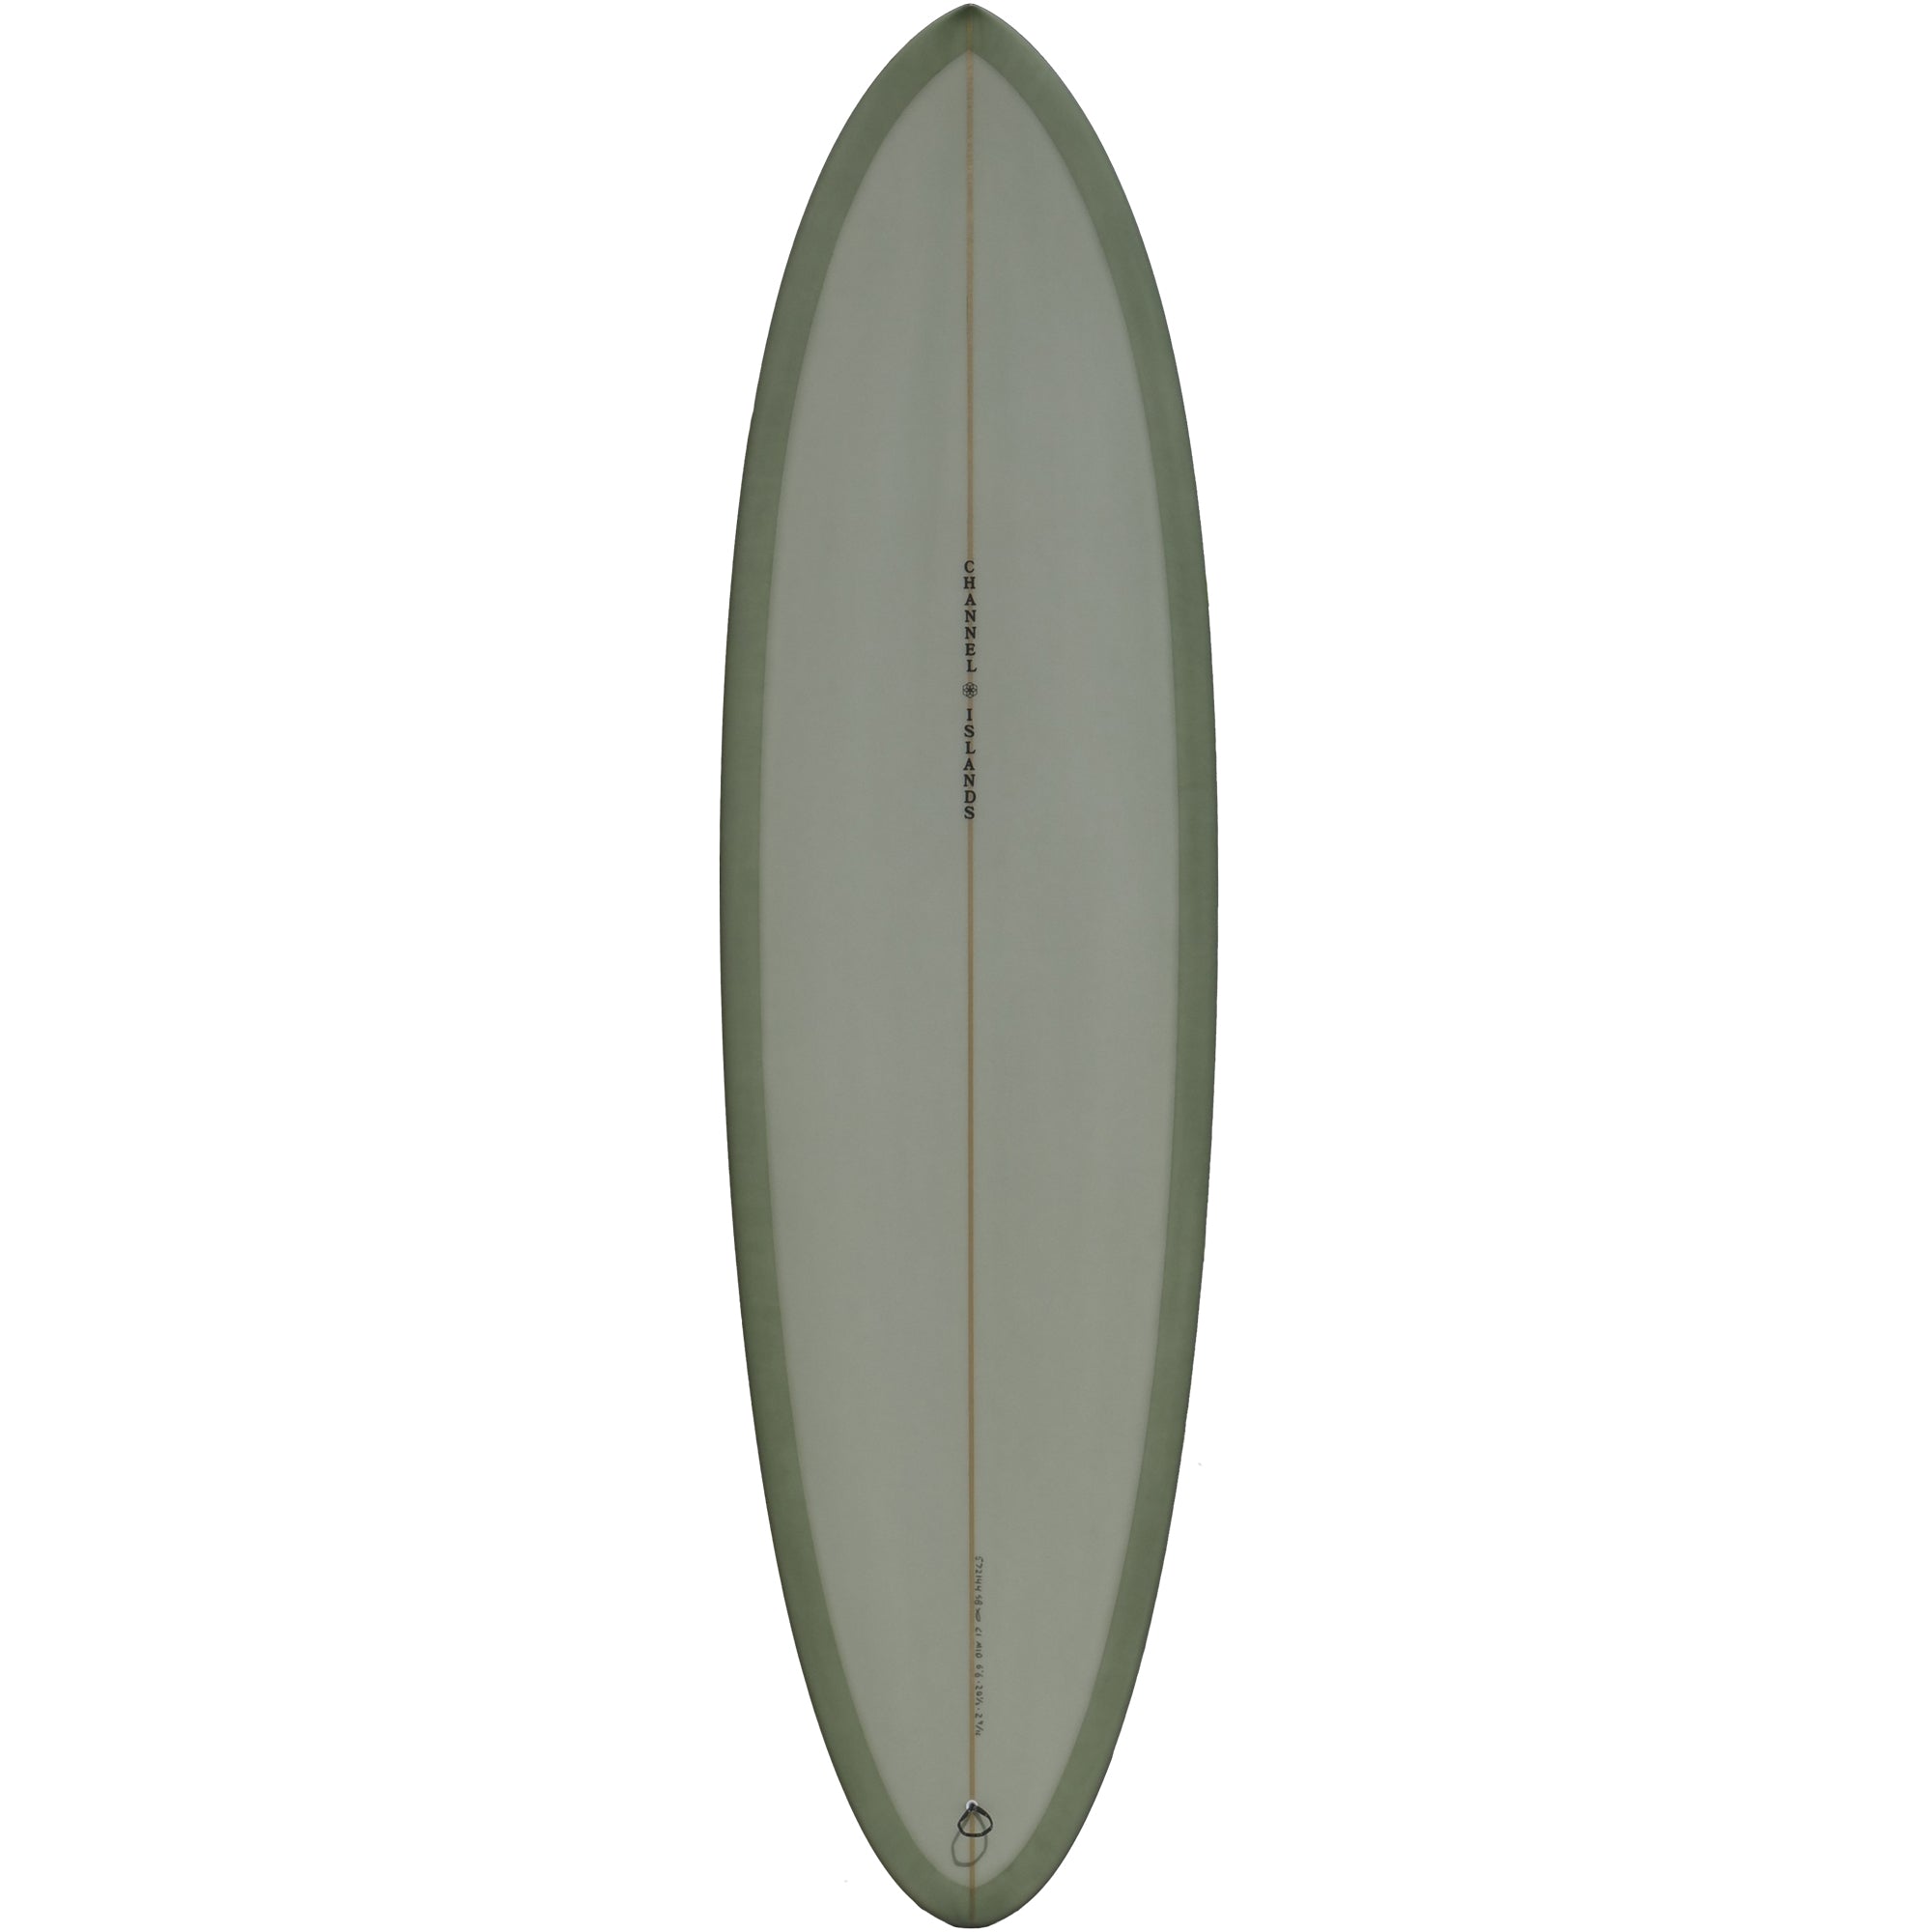 Channel Islands Waterhog 7'6 Surfboard